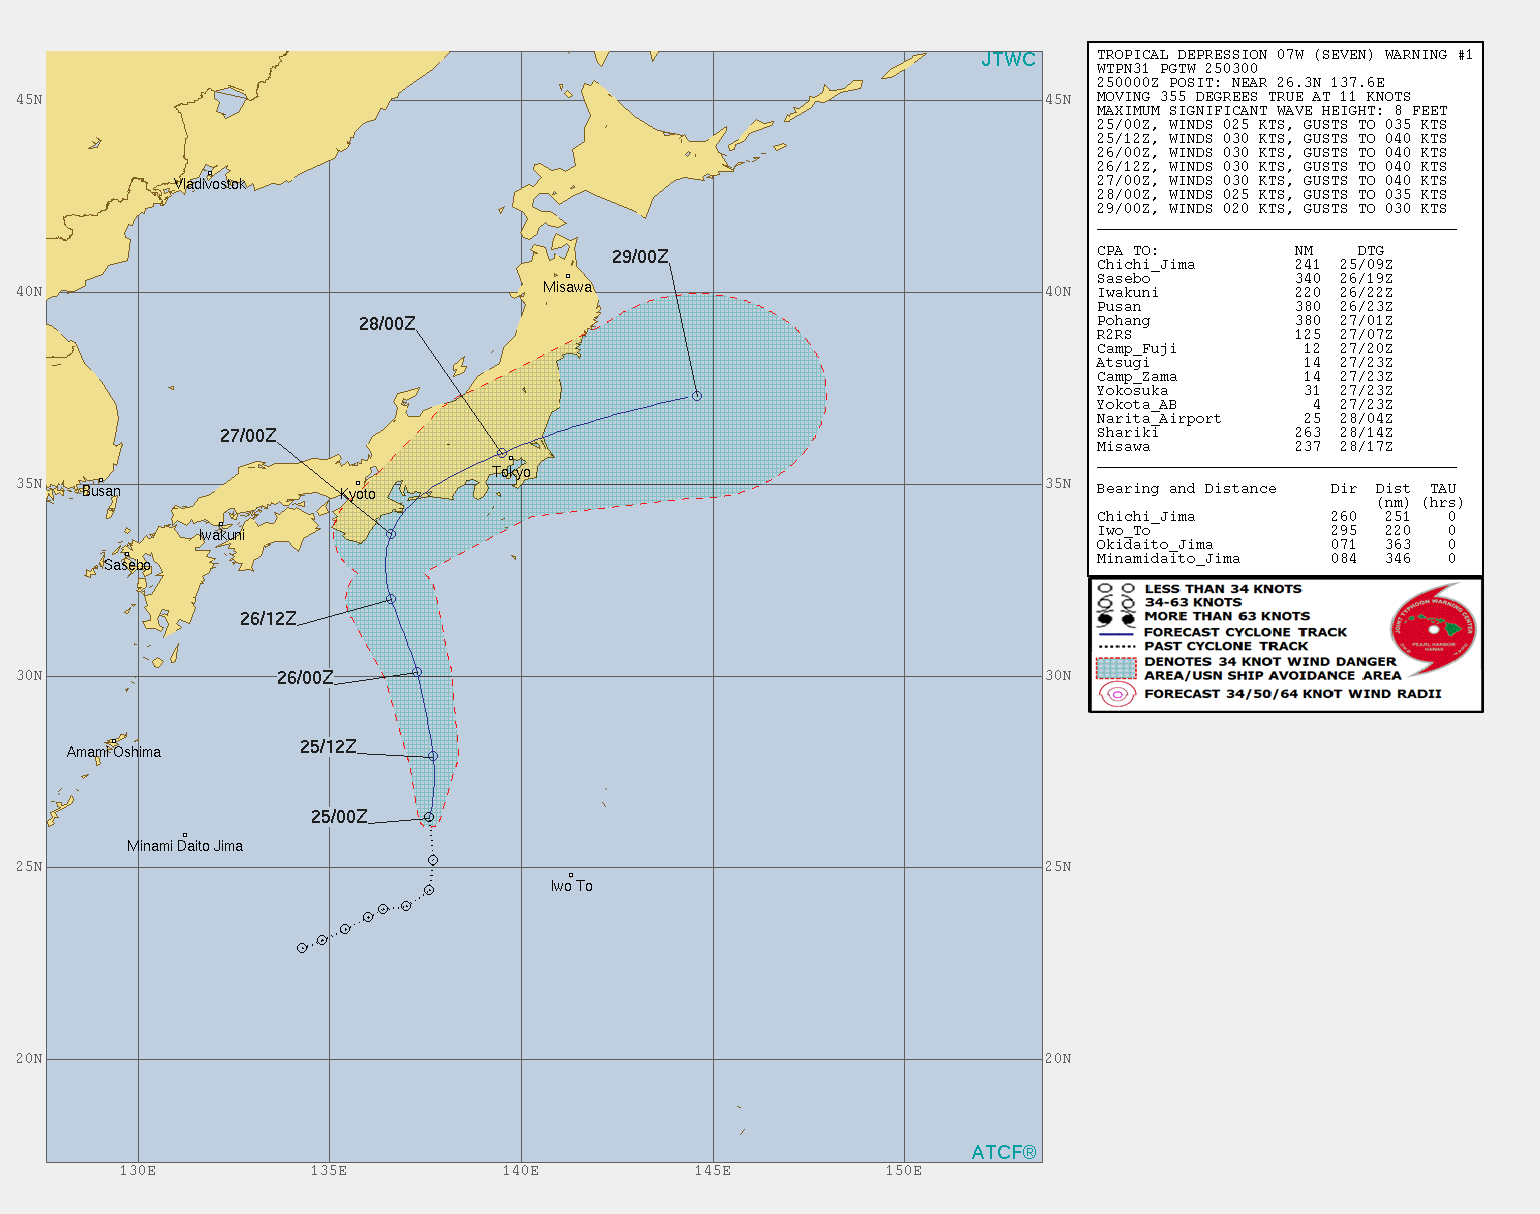 07w即将成6号台风 预测路线走 S 型 日本东京或受到影响